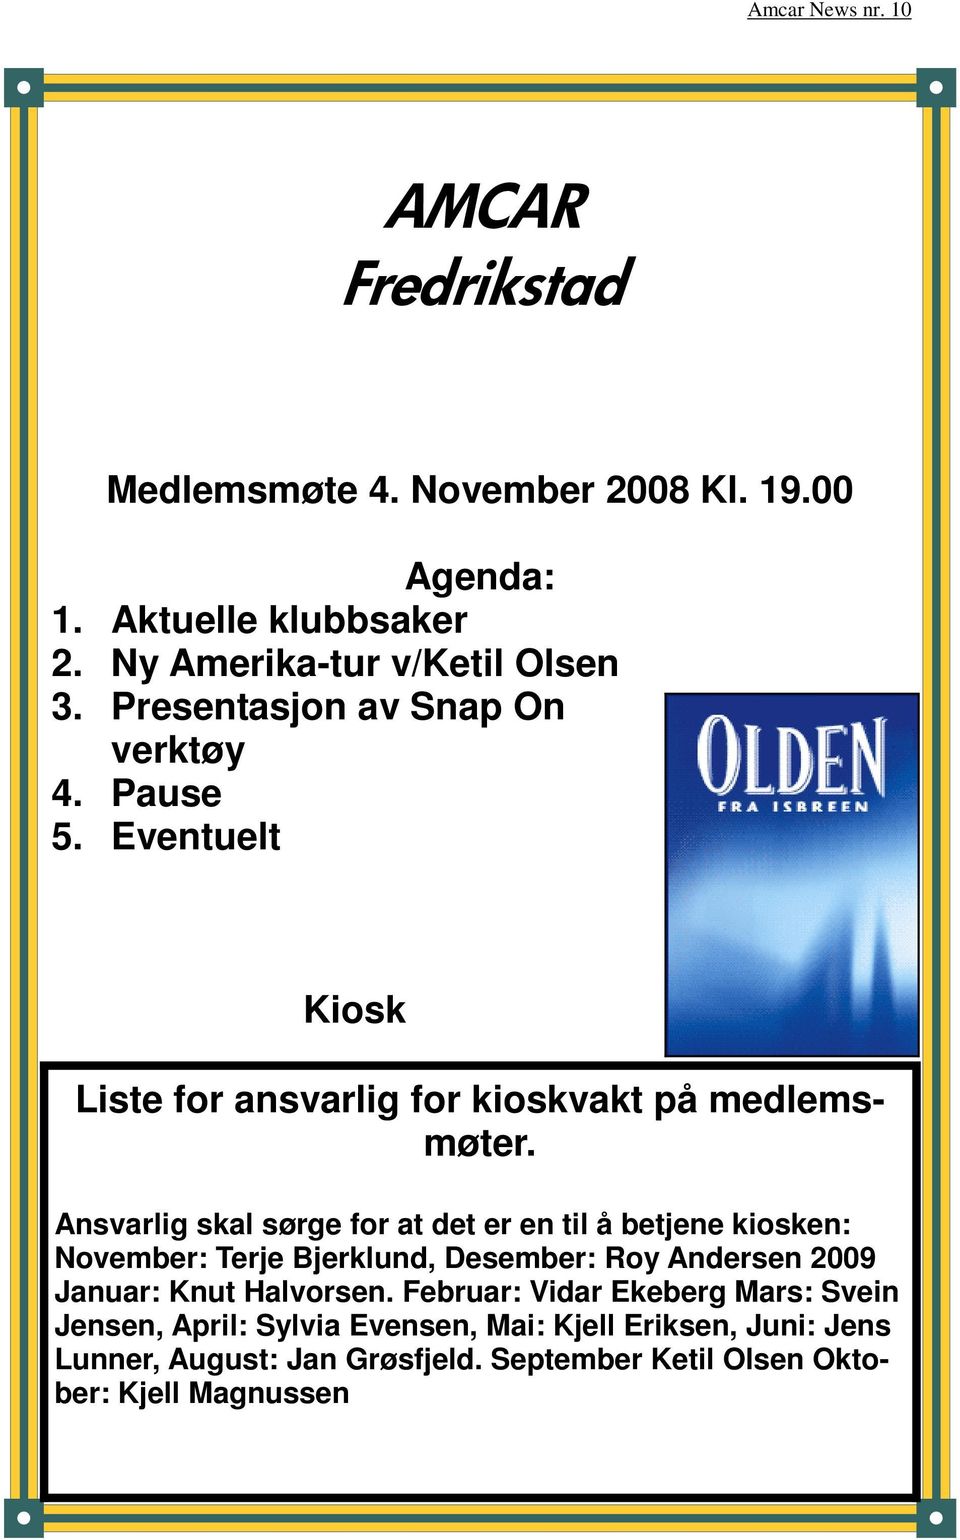 Ansvarlig skal sørge for at det er en til å betjene kiosken: November: Terje Bjerklund, Desember: Roy Andersen 2009 Januar: Knut